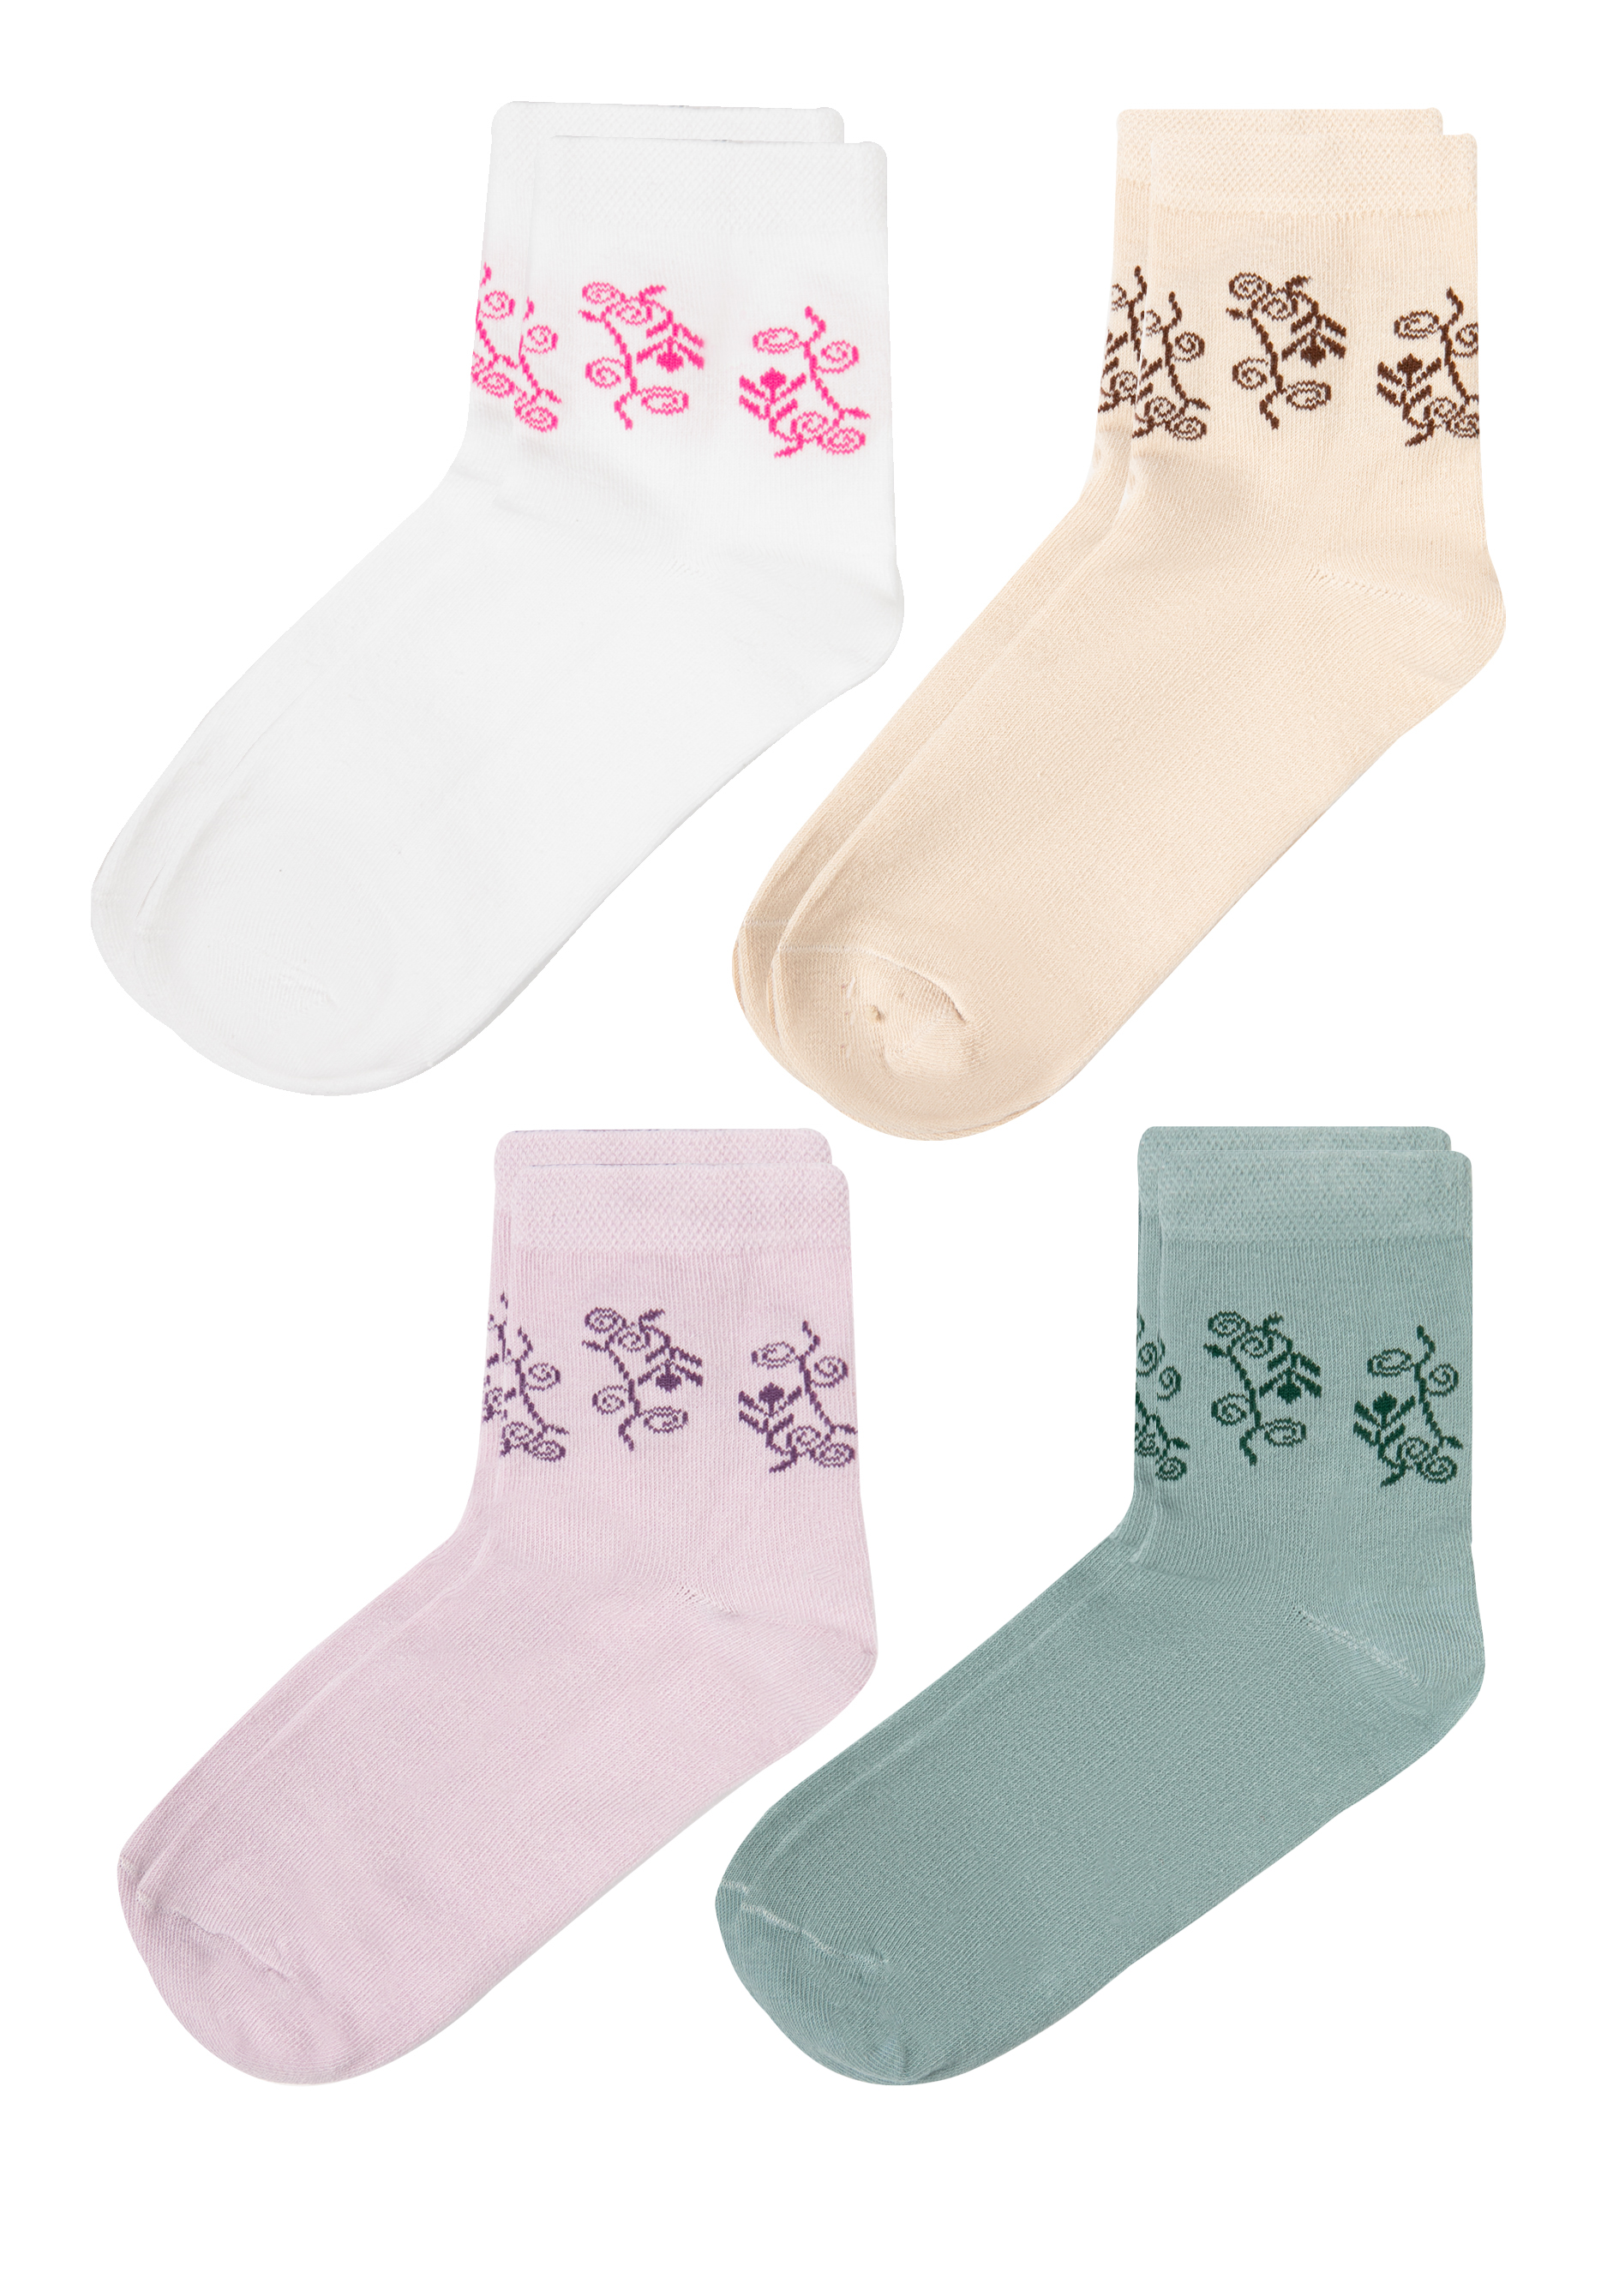 Носки женские комплект- 4 пары, цвет мультиколор, размер 23